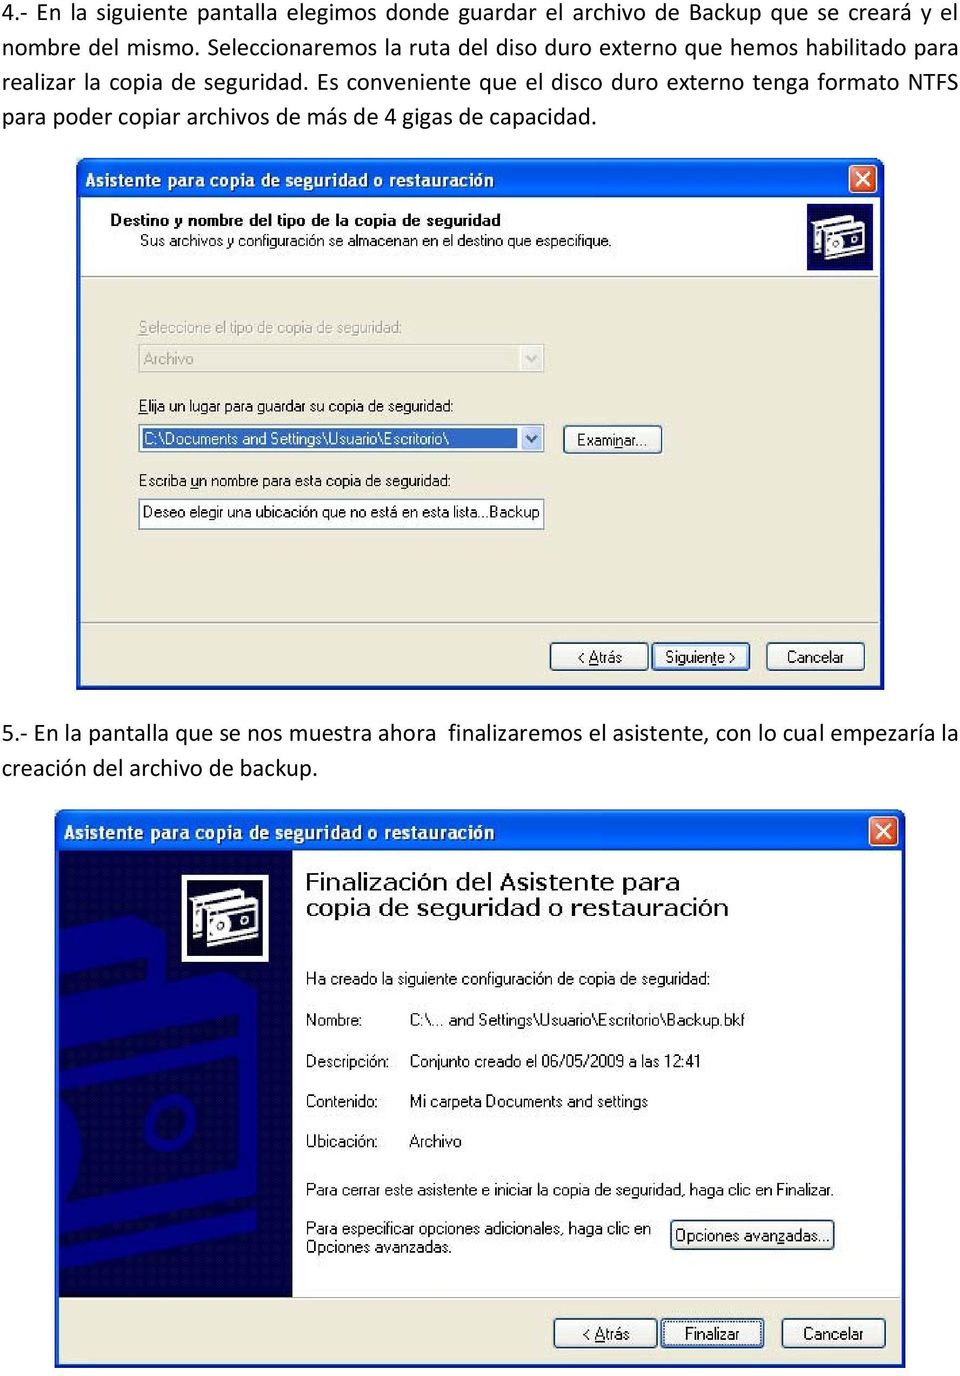 Es conveniente que el disco duro externo tenga formato NTFS para poder copiar archivos de más de 4 gigas de